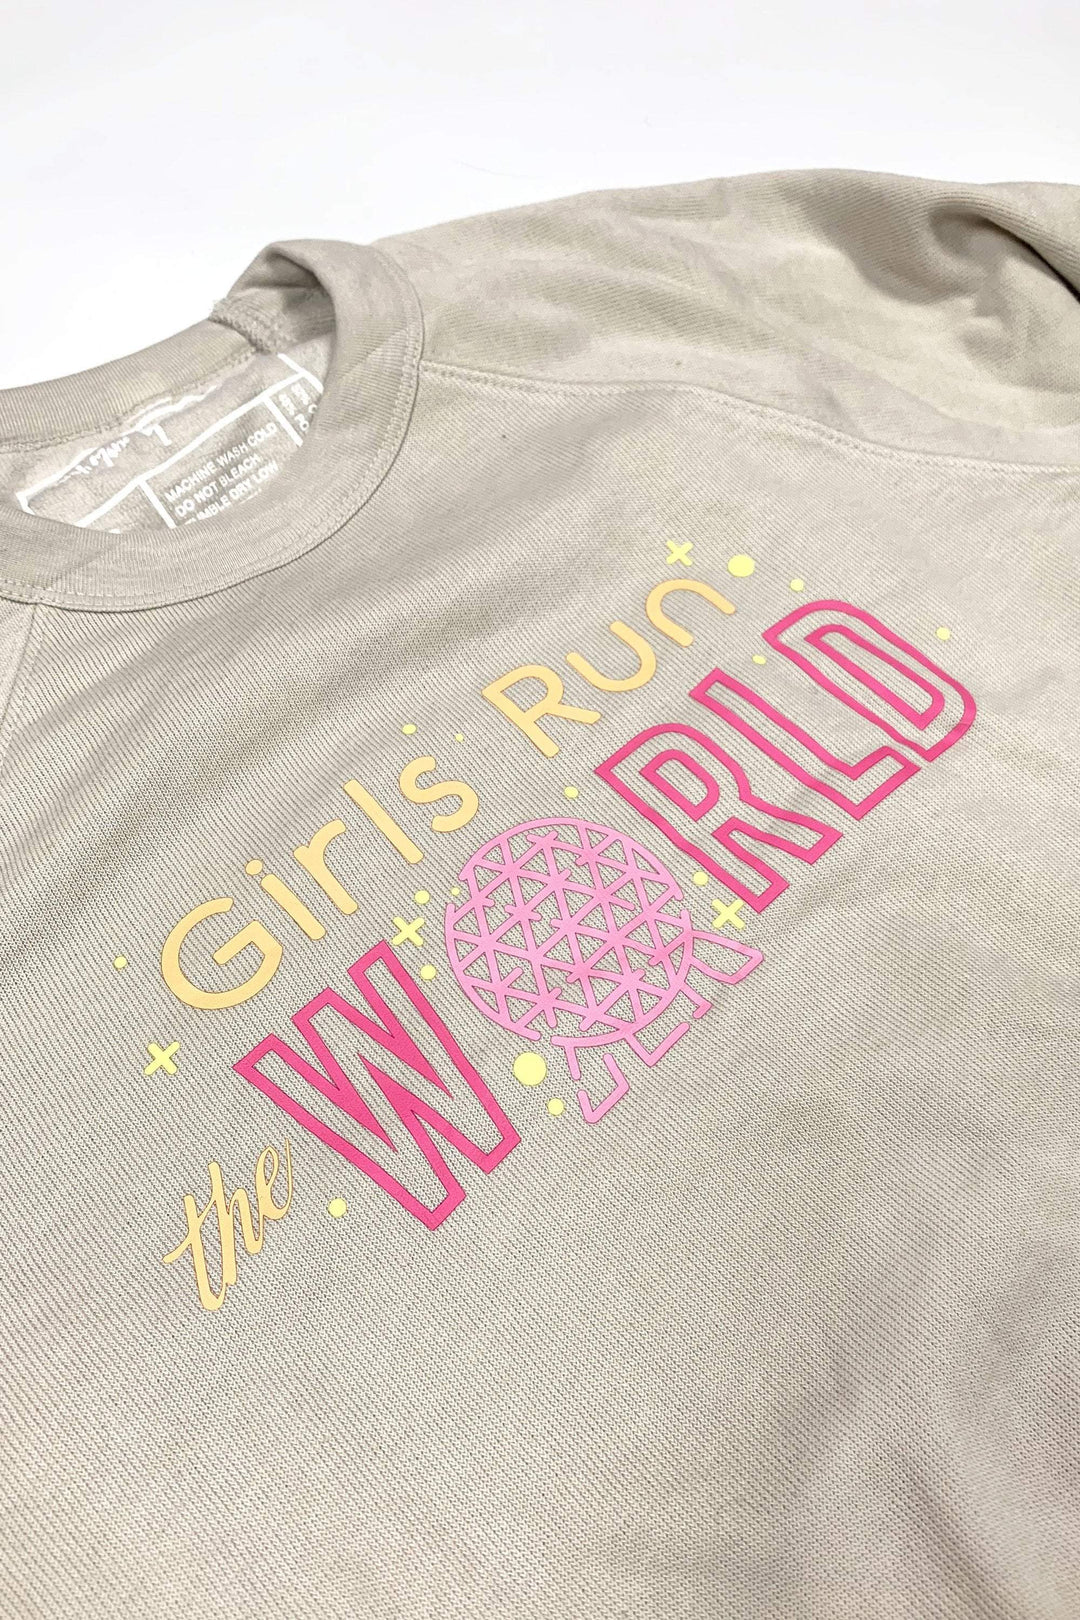 Sarah Marie Design Studio Sweatshirt Girls Run the World Epcot Sweatshirt